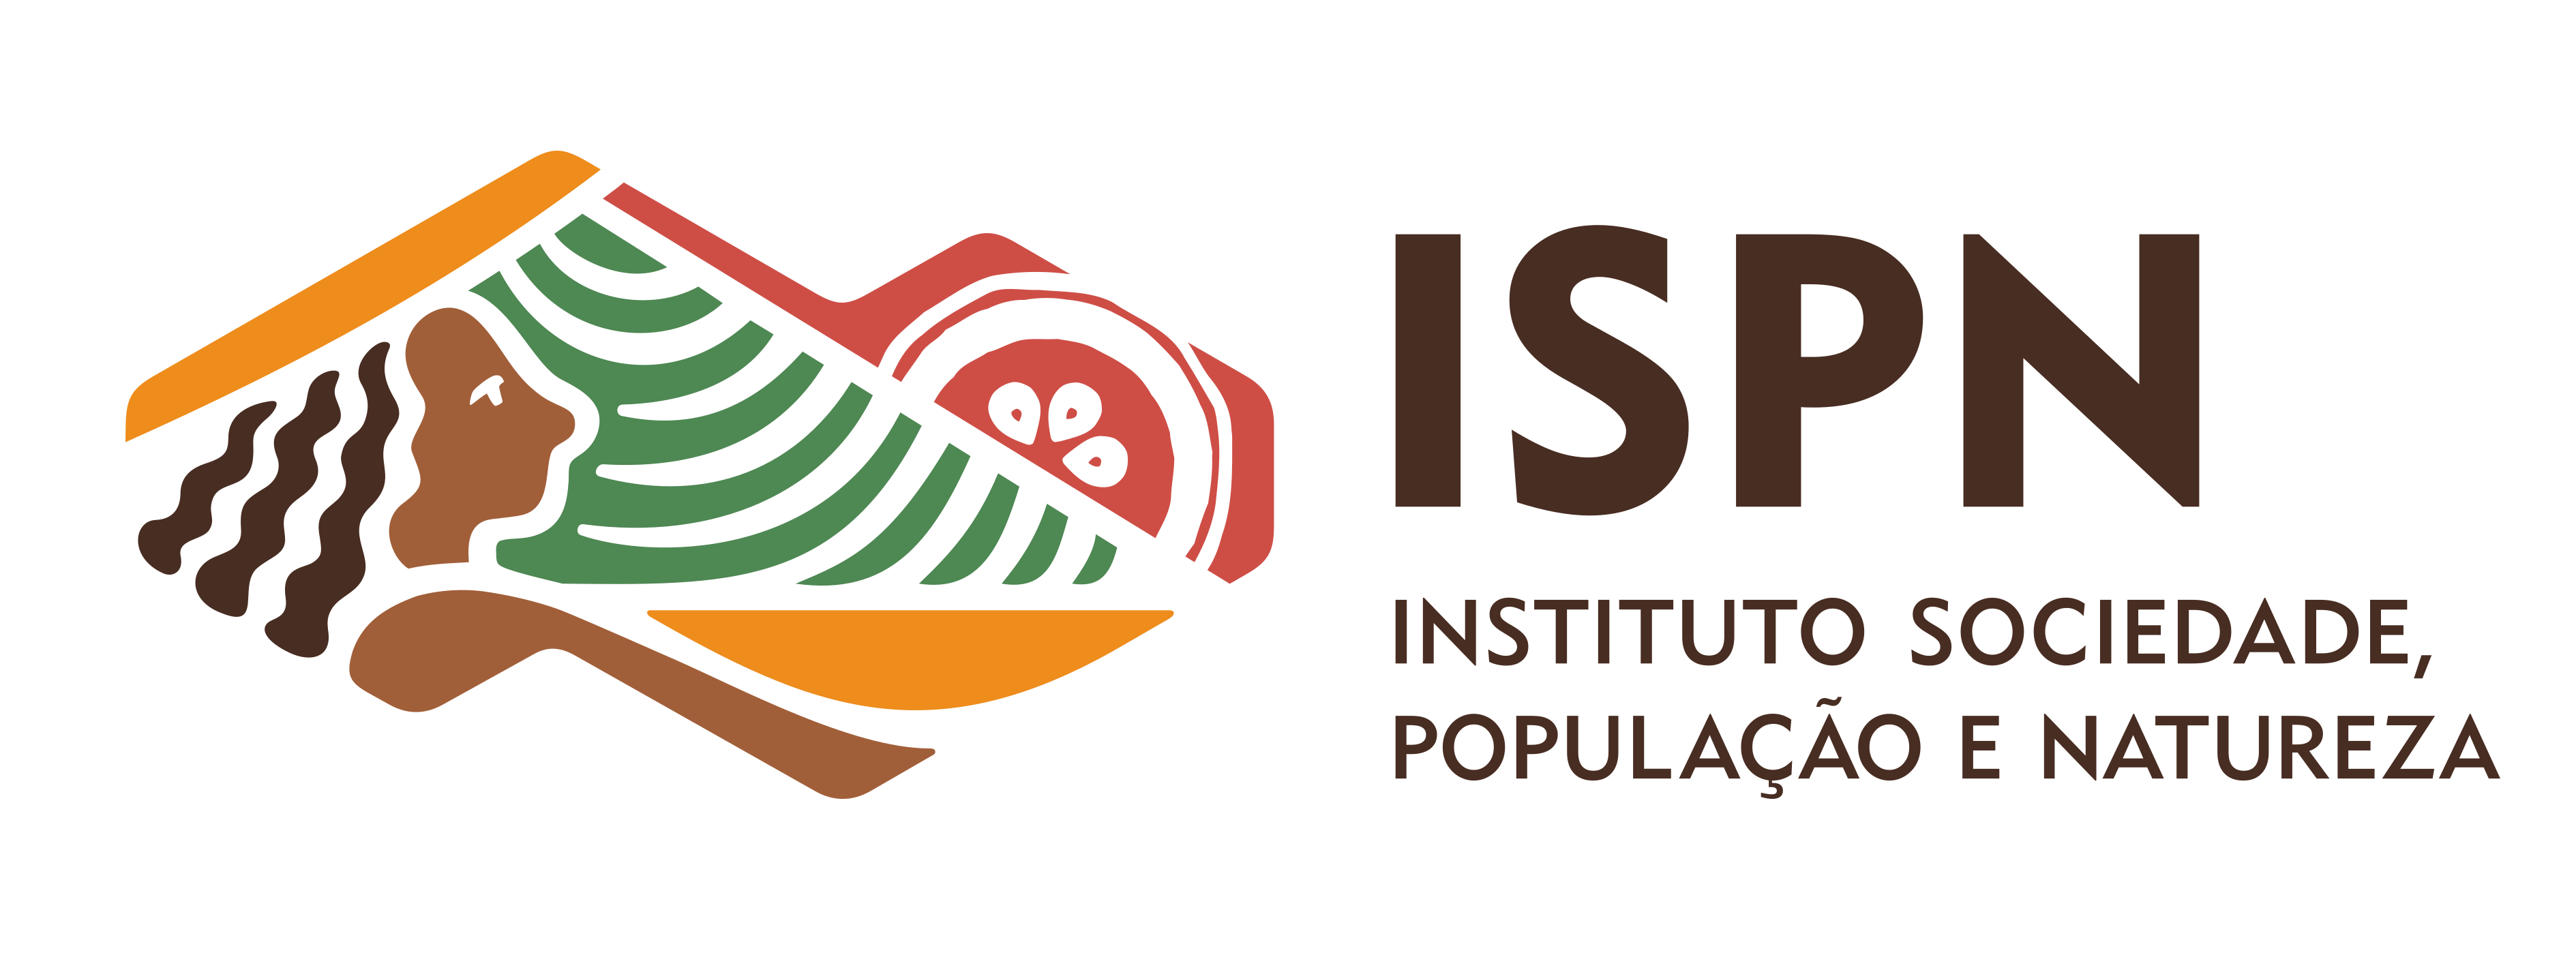 ISPN - Instituto Sociedade, População e Natureza